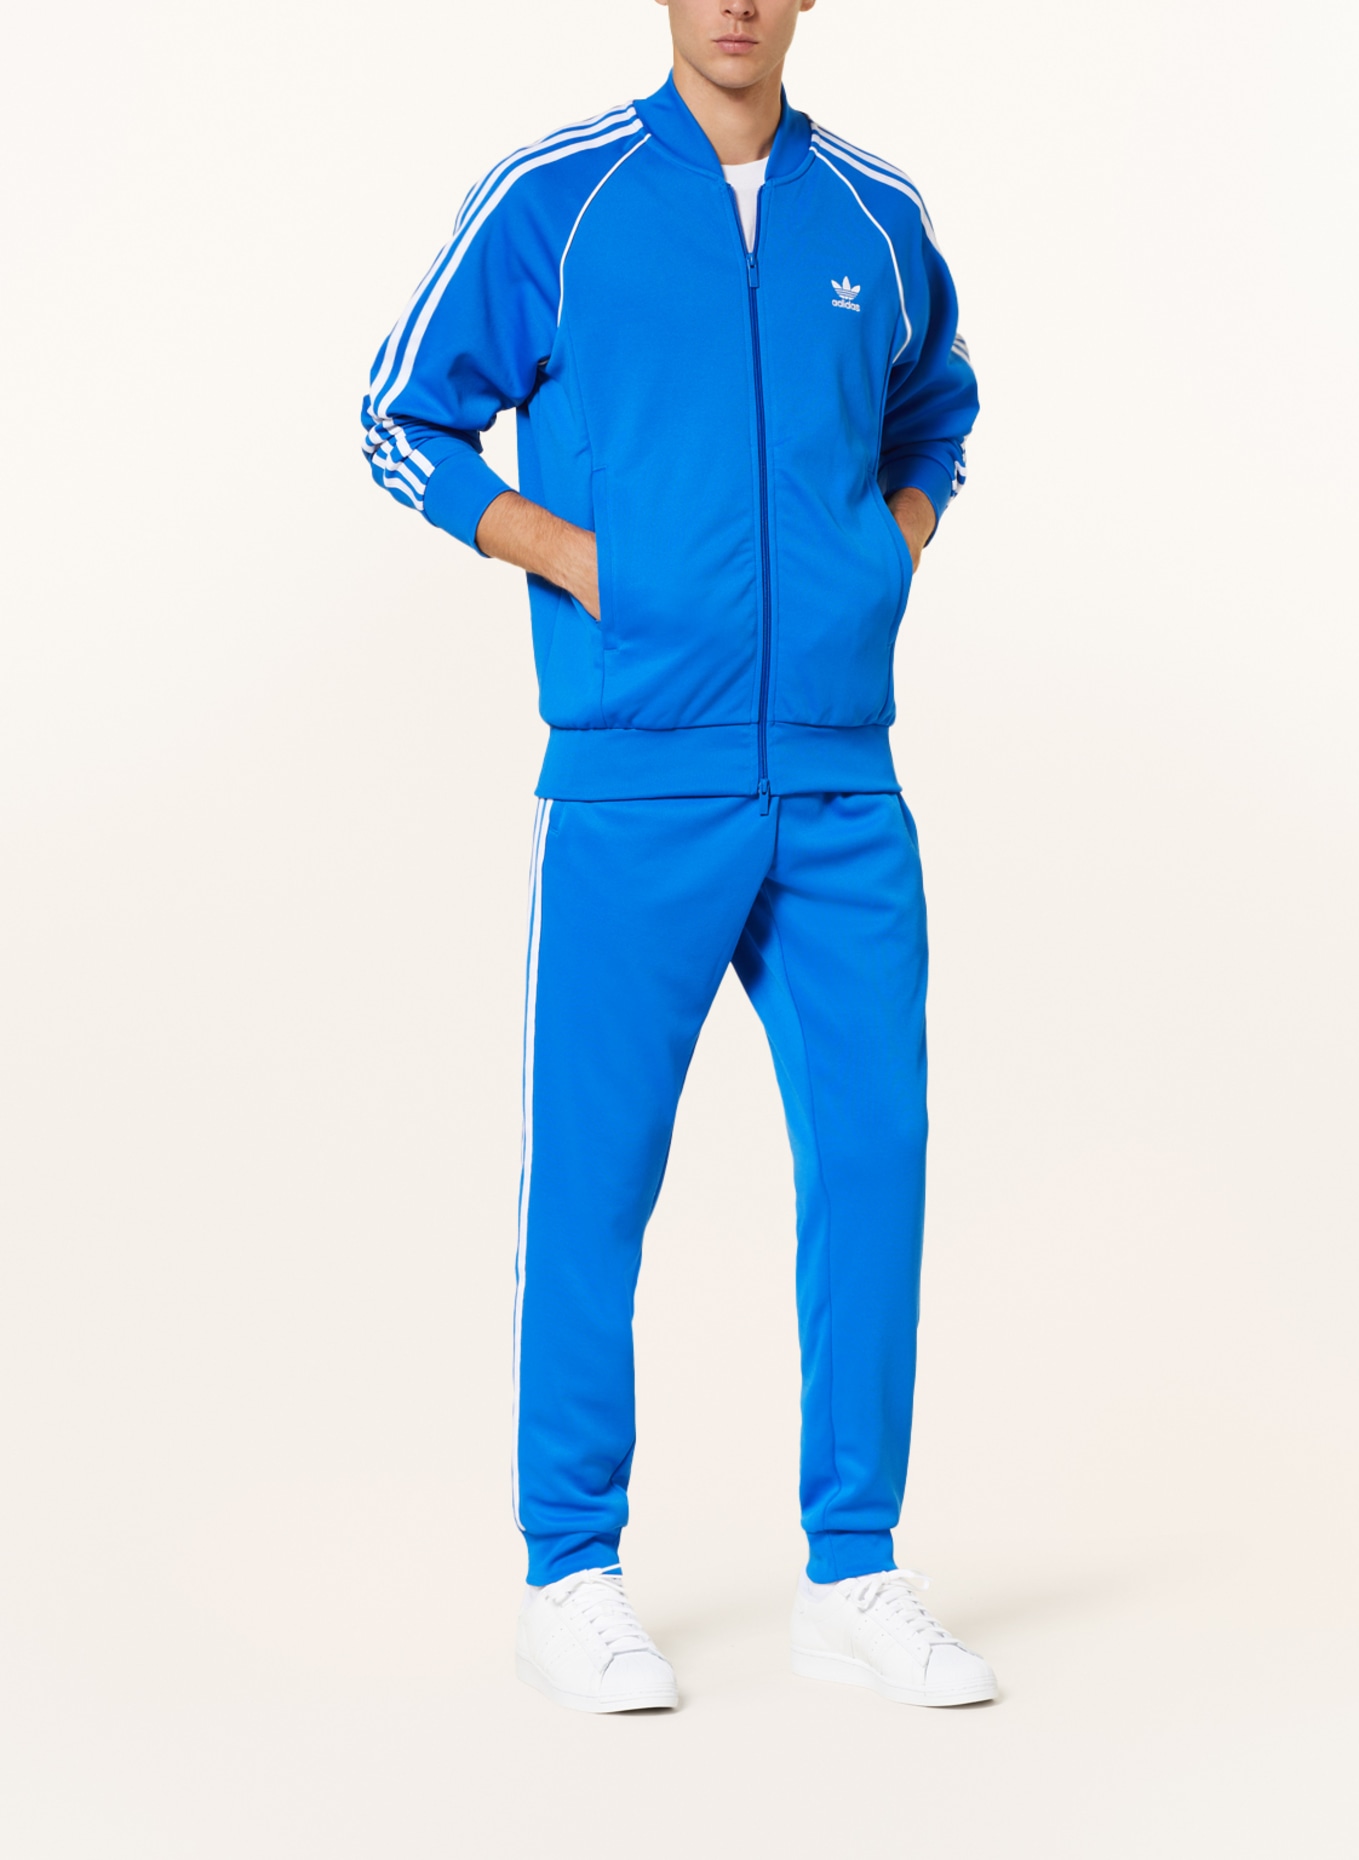 SST ADICOLOR ORIGINALS Originals adidas CLASSICS blue/ jacket in white Training